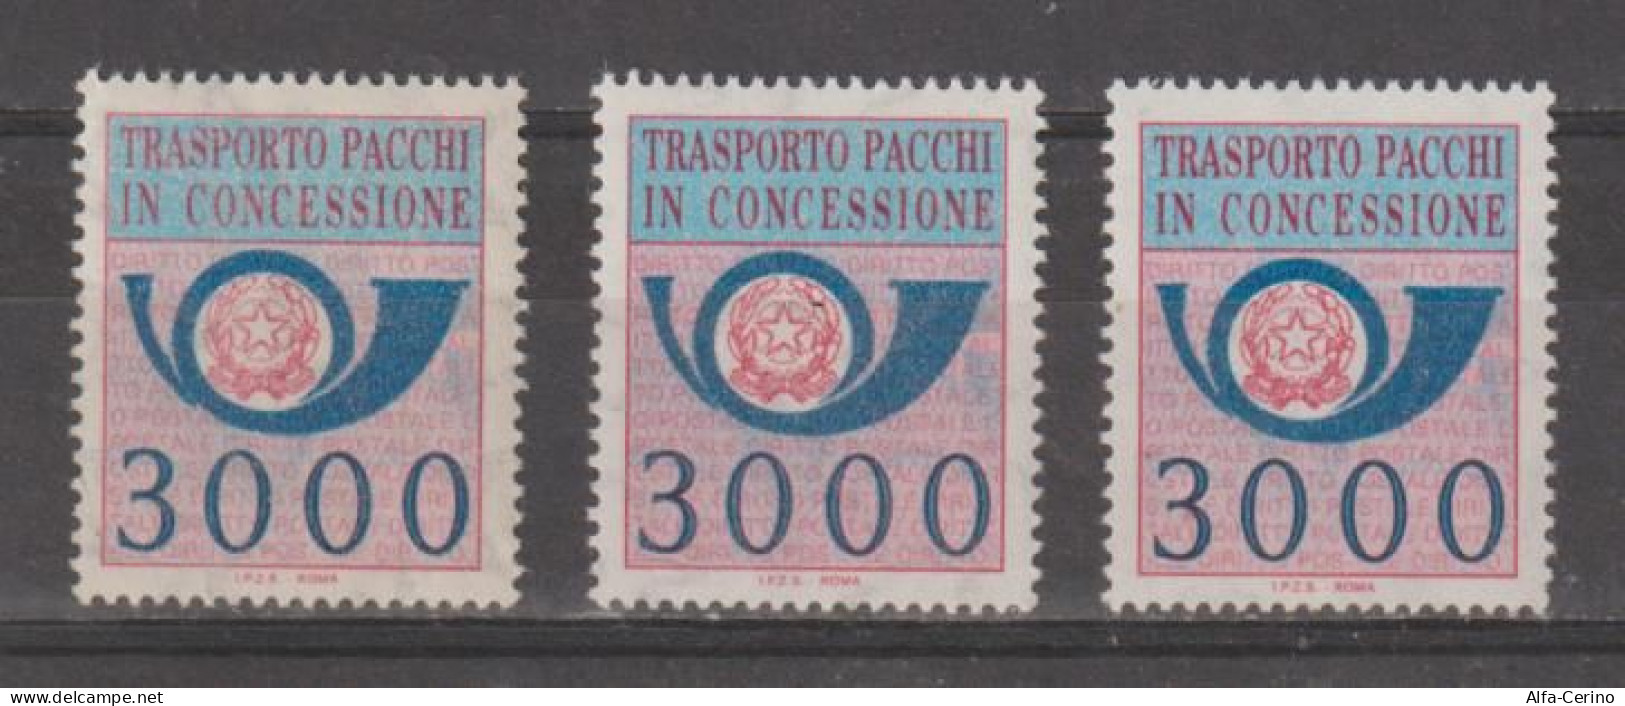 REPUBBLICA:  1984  PACCHI  IN  CONCESSIONE  -  £. 3000  AZZURRO  E  ROSA  LILLA  RIPETUTO  3  N. -  SASS. 22 - Concessiepaketten